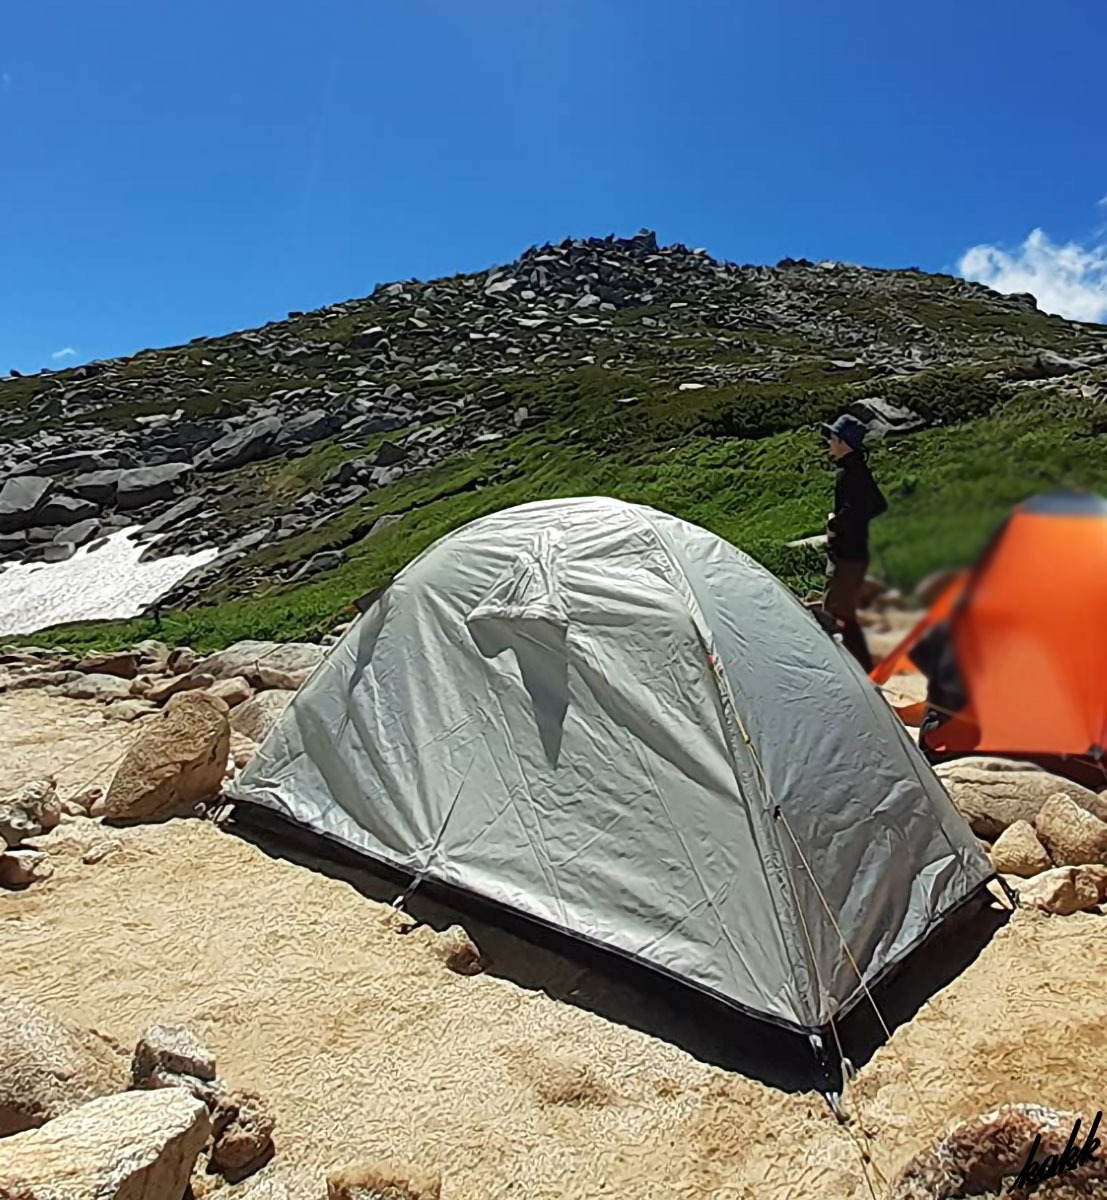 【キャンプデビューにおすすめ】 テント 1人用 自立式 耐水圧3000mm 通気性 結露防止 簡単設営 アウトドア ソロ ツーリング キャンプ